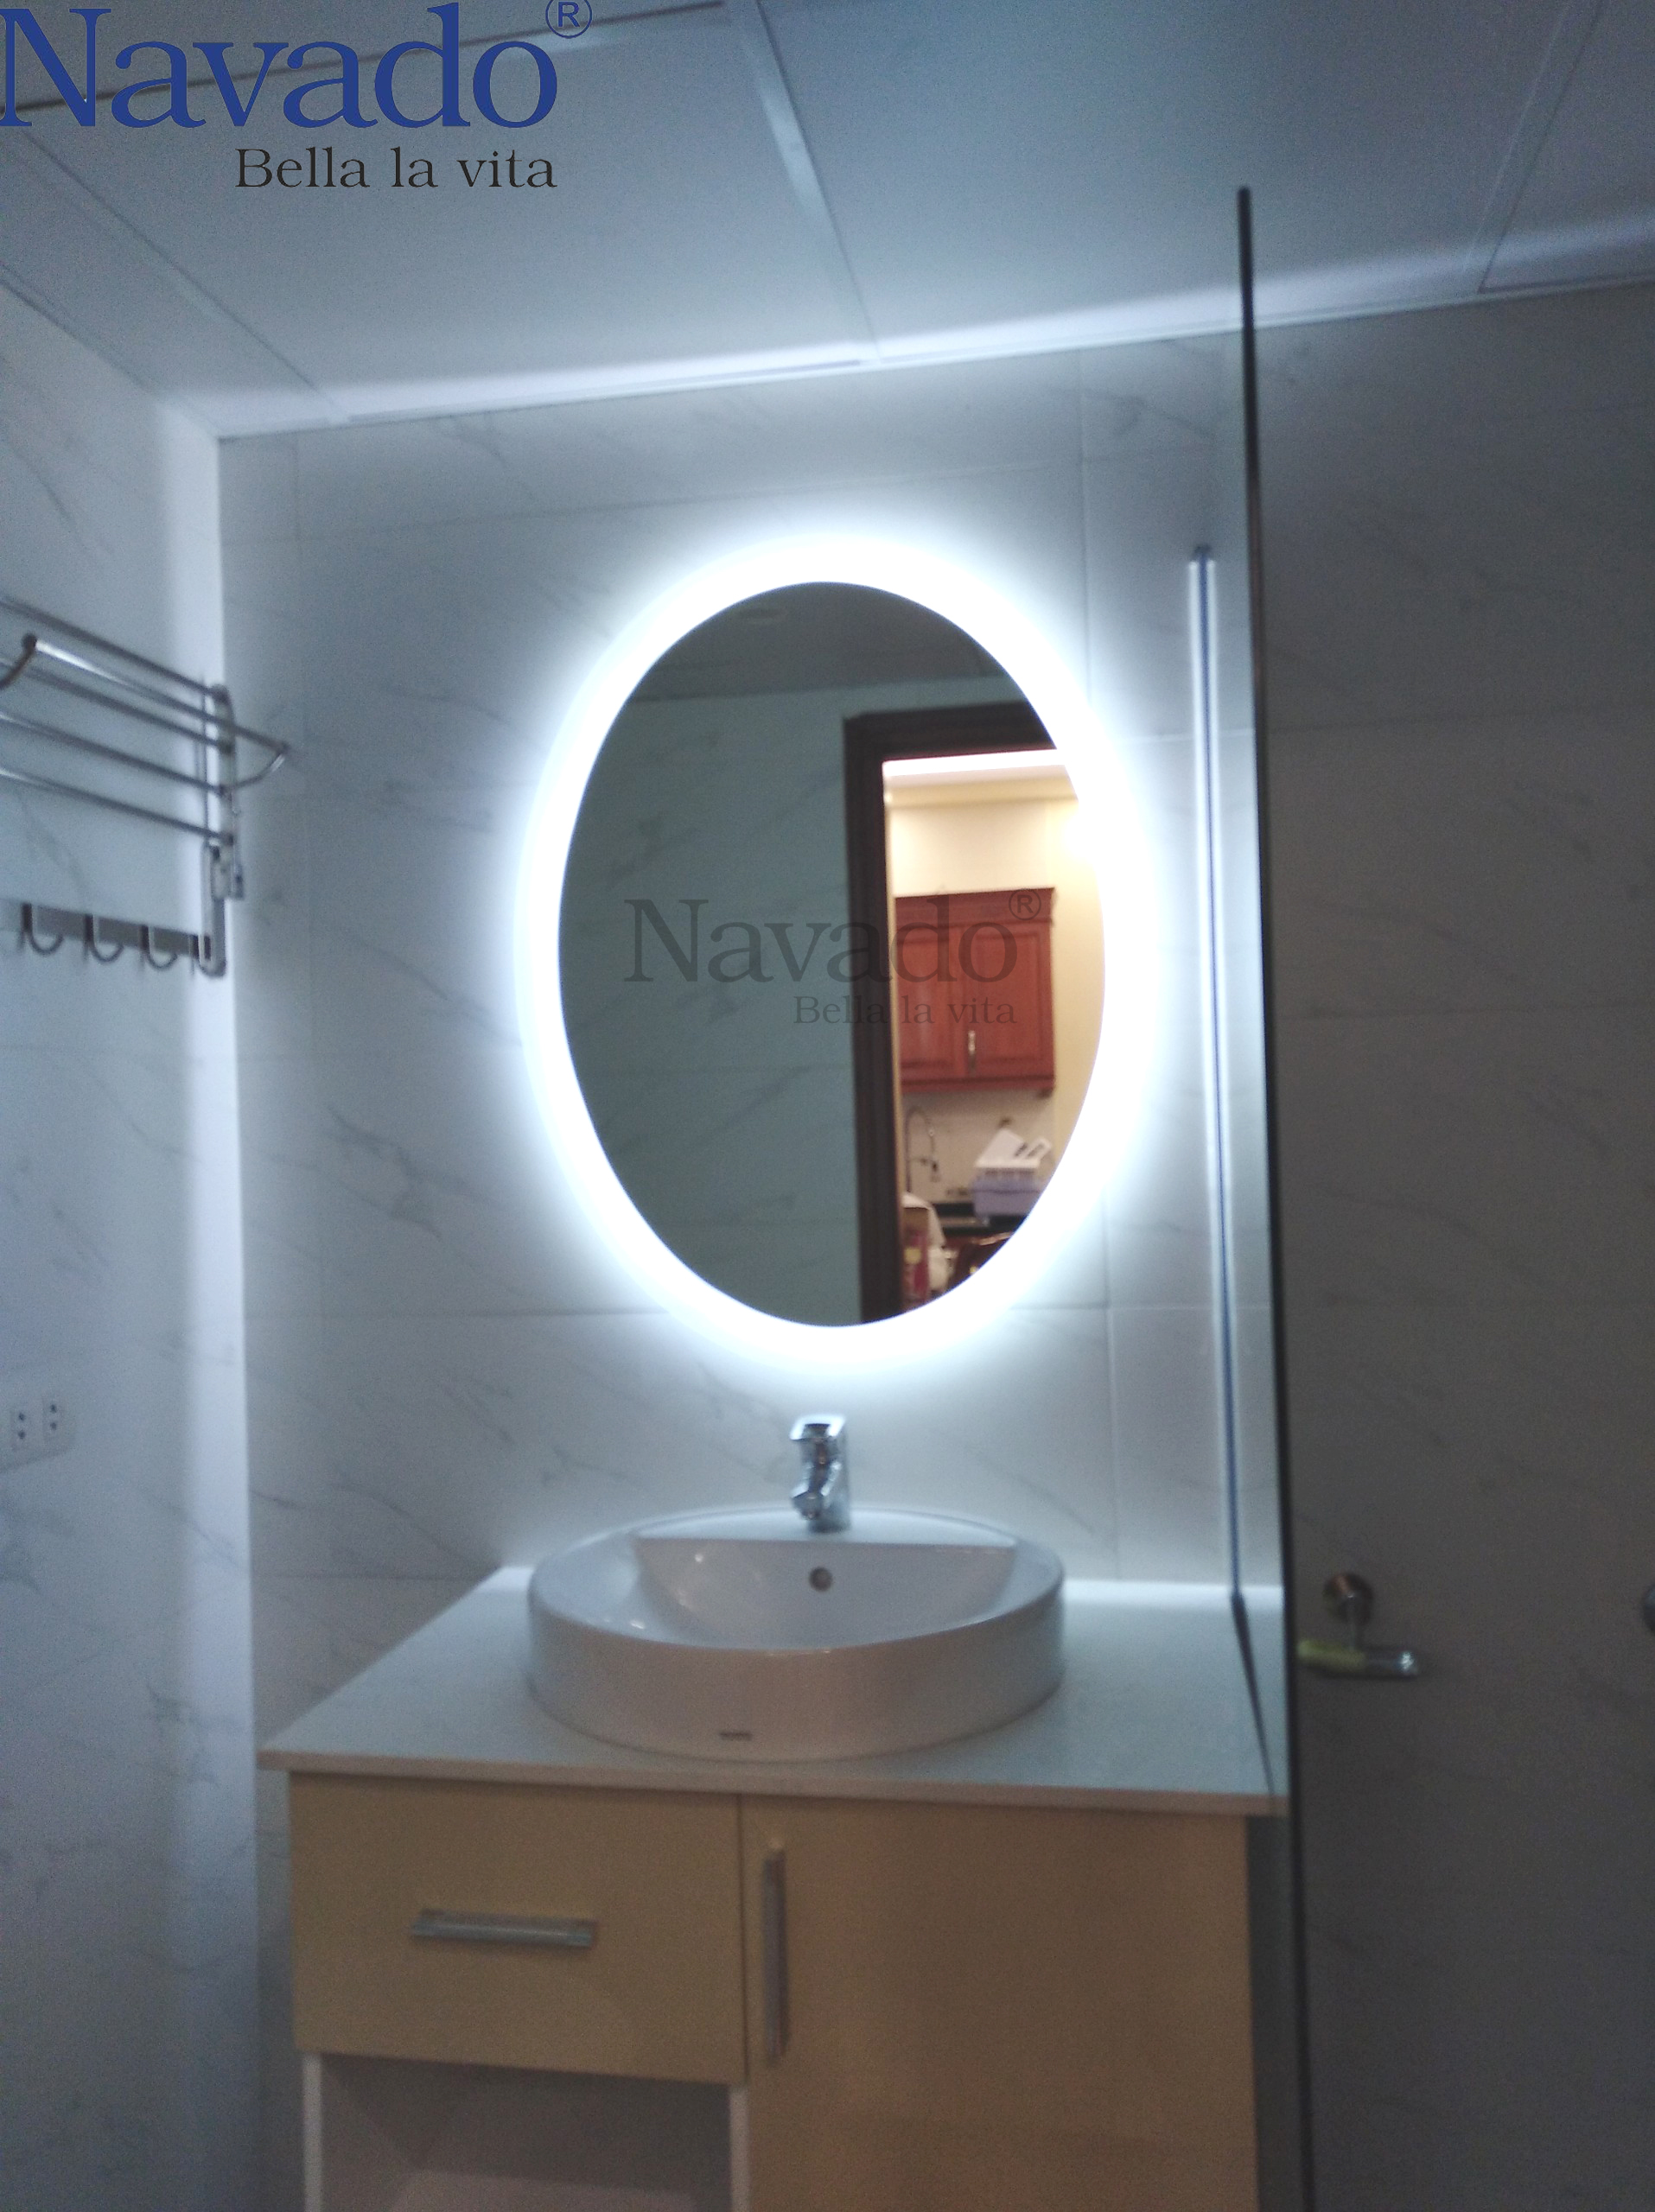 Gương nhà tắm đèn led: Nâng cao trải nghiệm trong phòng tắm với gương nhà tắm đèn LED. Thoải mái cải thiện tầm nhìn trong điều kiện thiếu sáng và đối mặt một cách tự tin với bản thân mỗi ngày. Sự kết hợp hoàn hảo giữa chức năng và thẩm mỹ sẽ đem đến cho bạn một phòng tắm đẹp và tiện nghi.